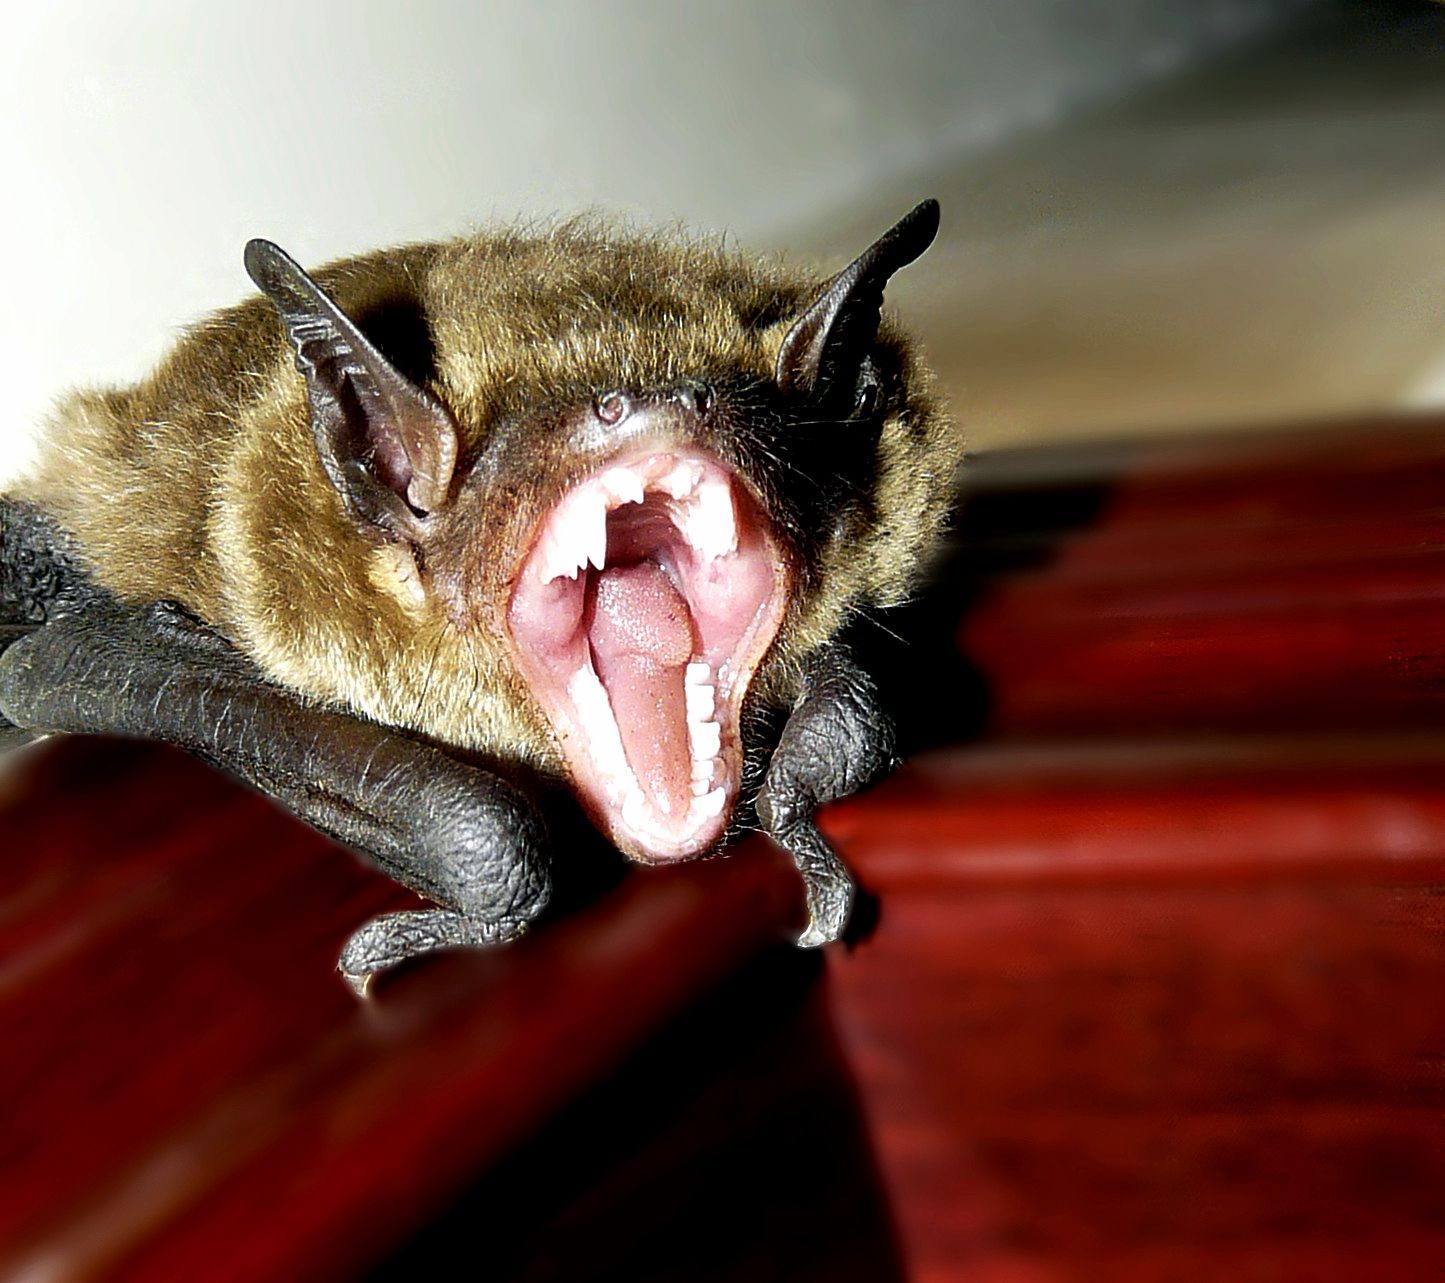 澳洲维多利亚野生动物园 蝙蝠宝宝萌态十足_博览_环球网